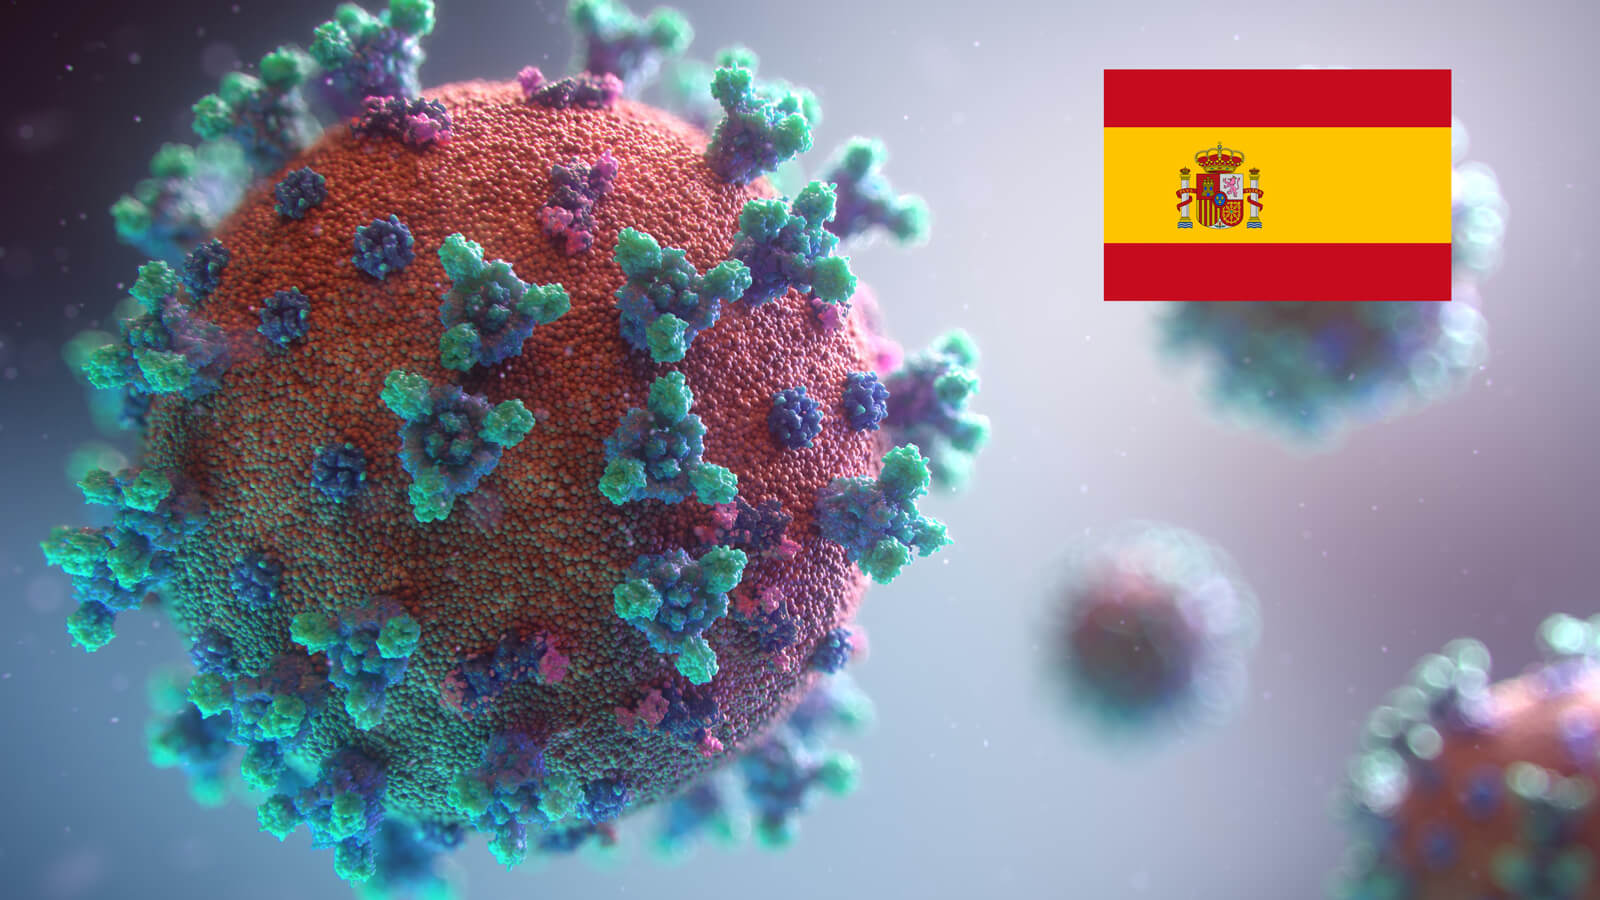 Darstellung Corona Virus mit spanischer Flagge oben rechts